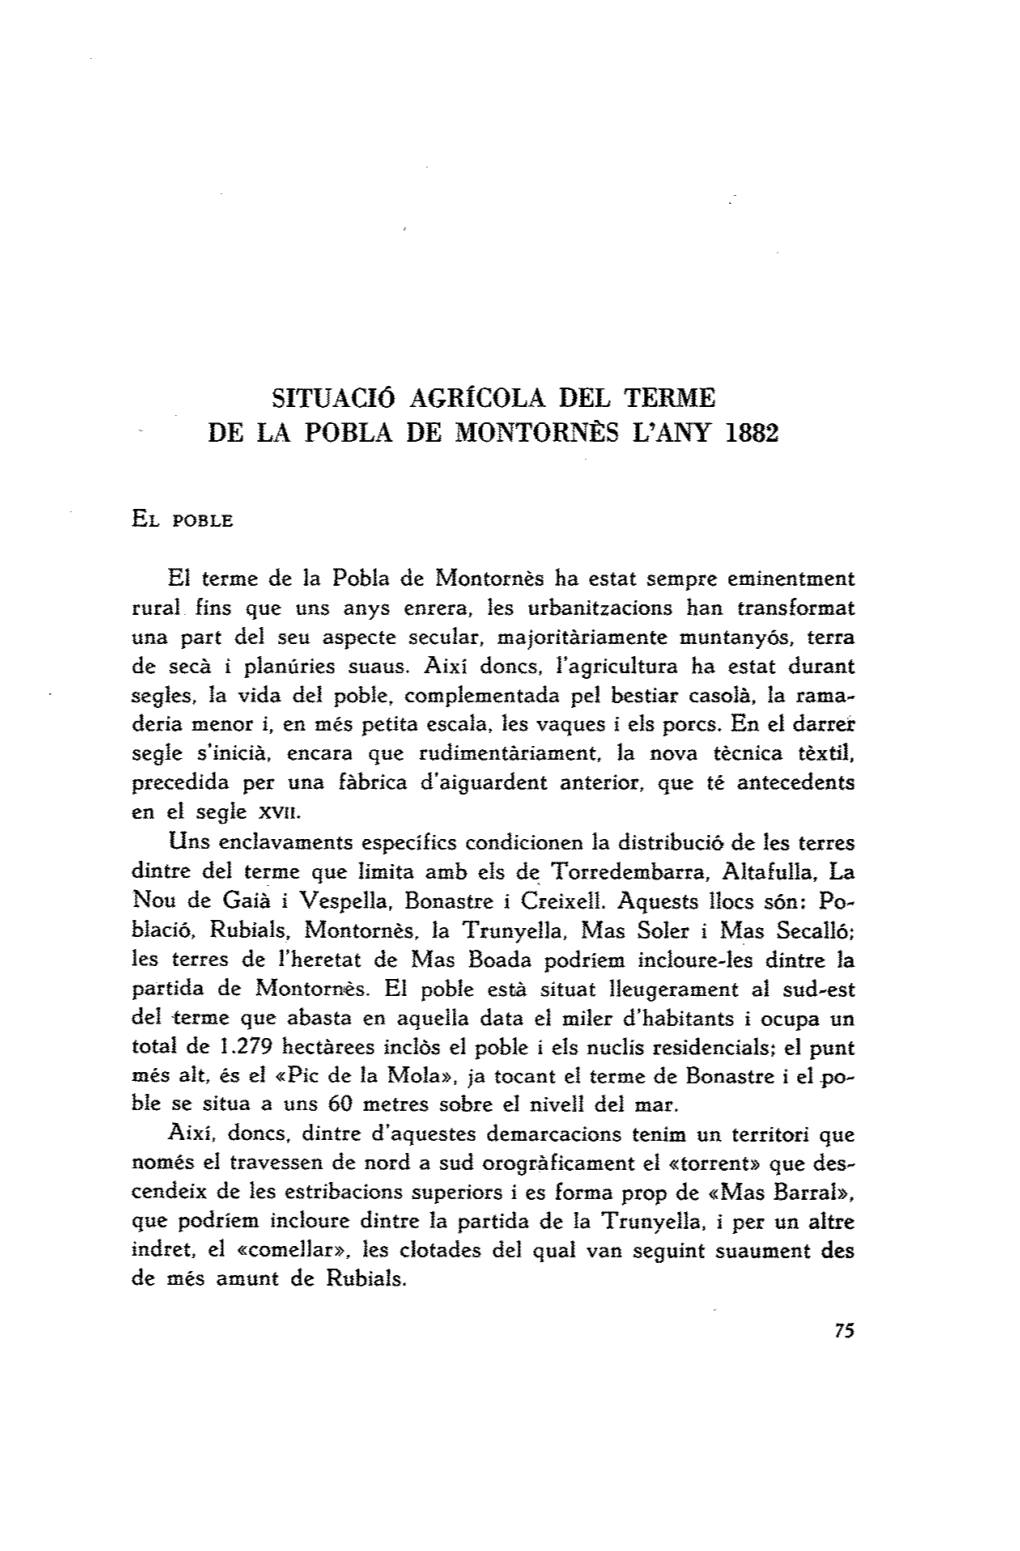 SITUACIÓ Agrfcola DEL TERME DE LA POBLA DE MONTORNES L'any 1882